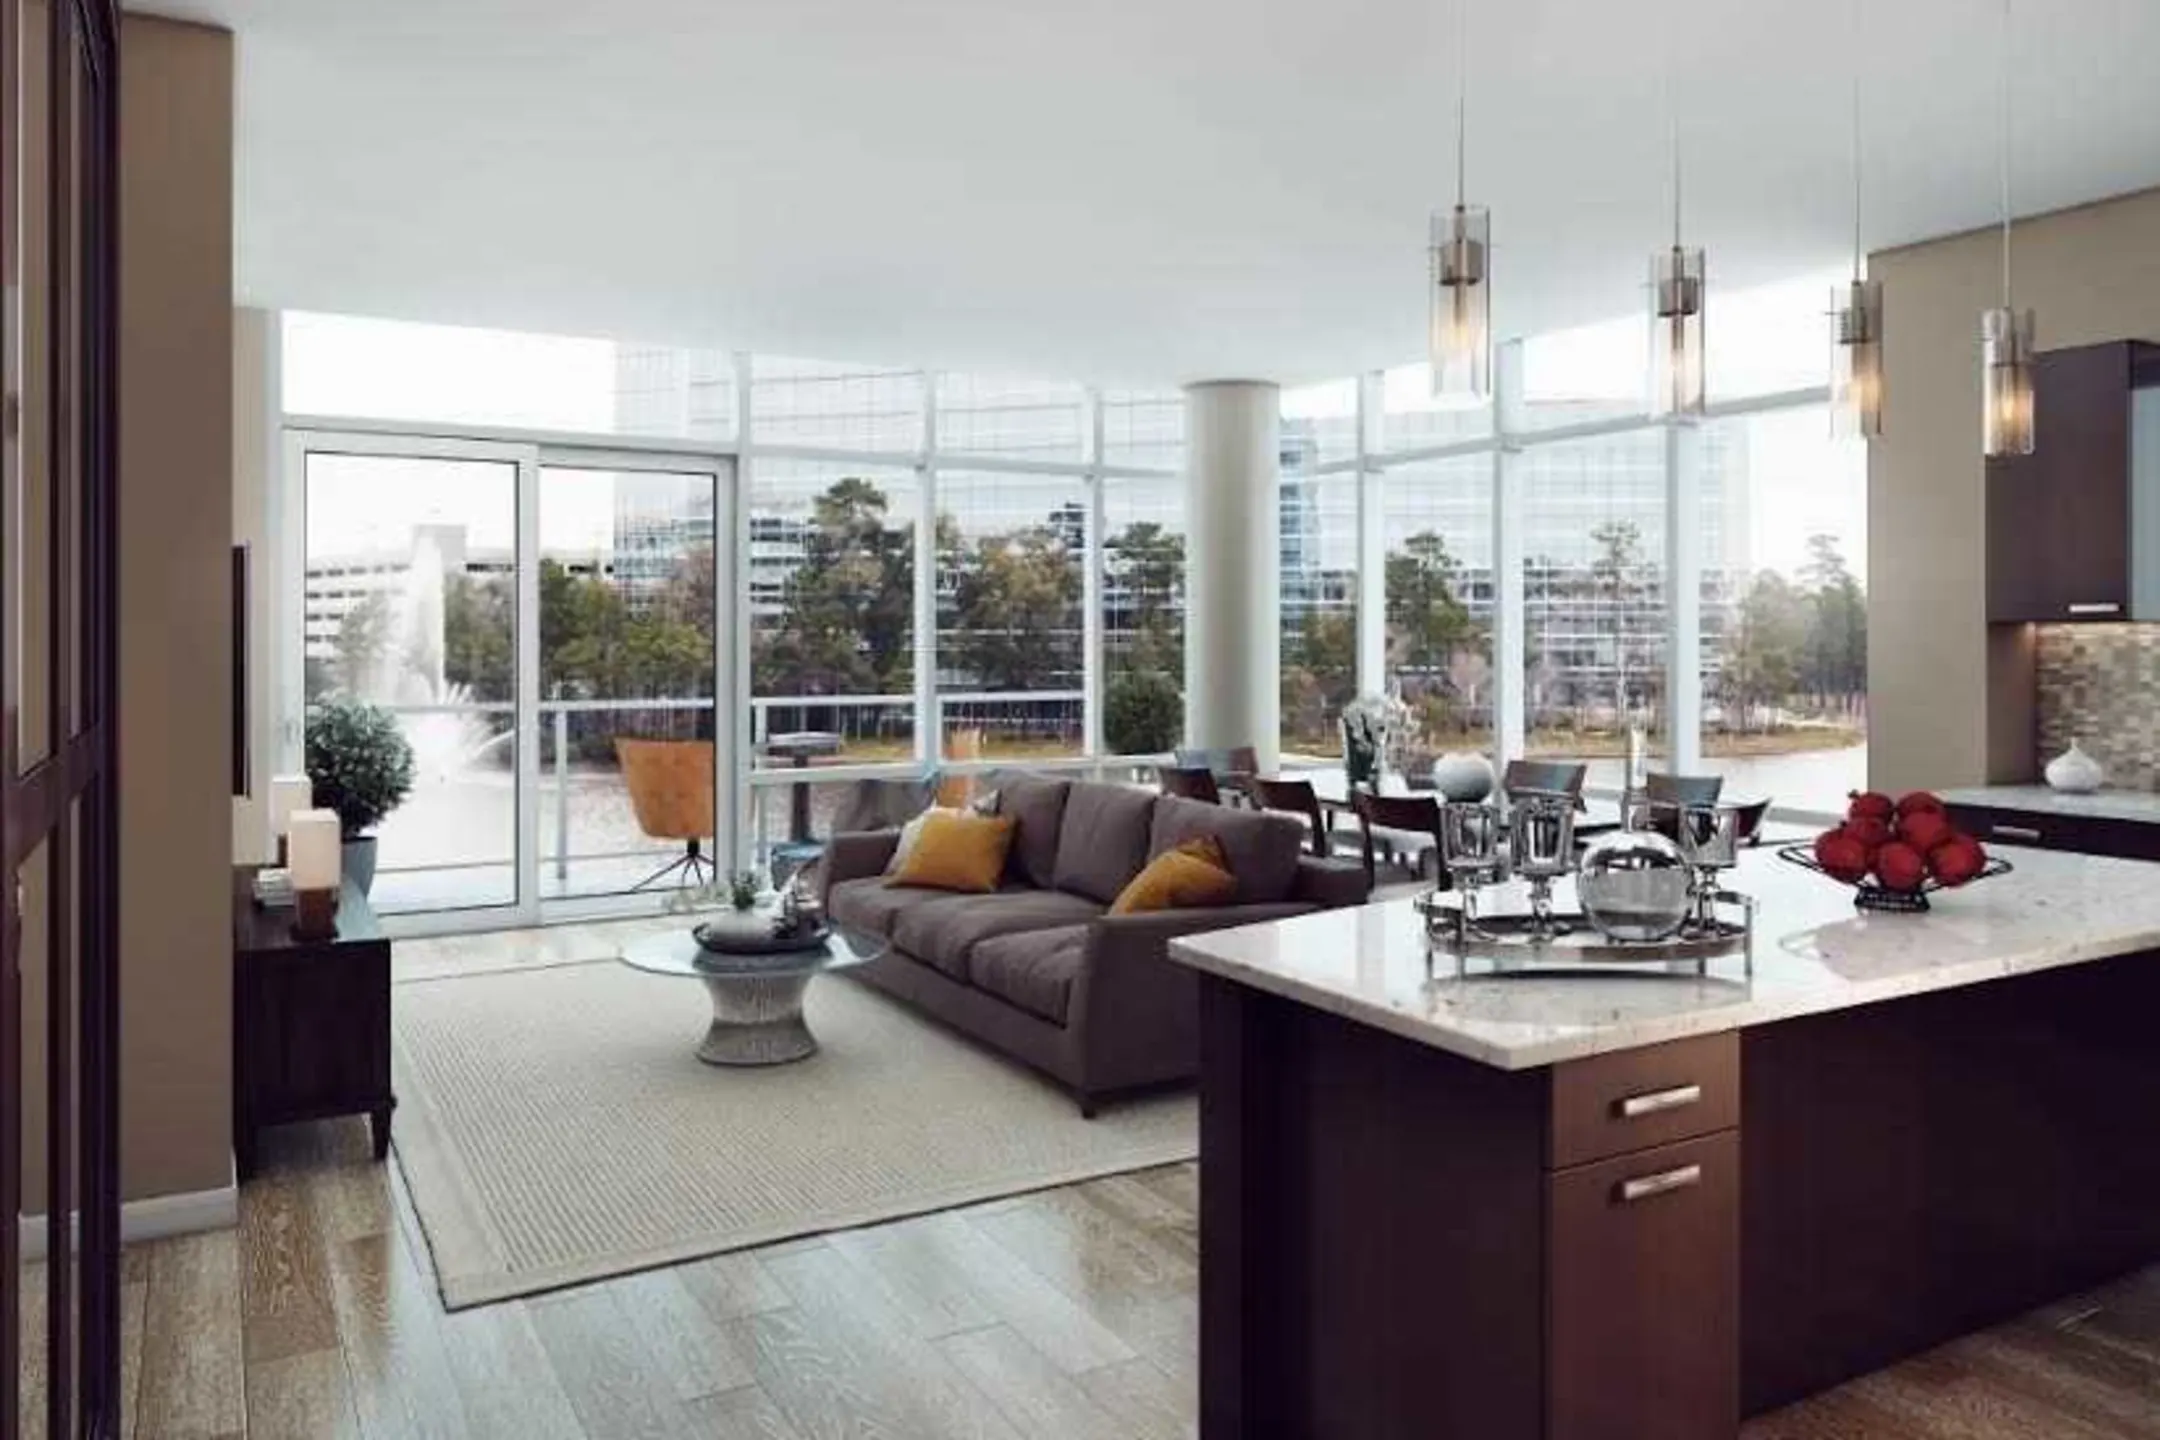 Living Room - 77301 Luxury Properties - Conroe, TX